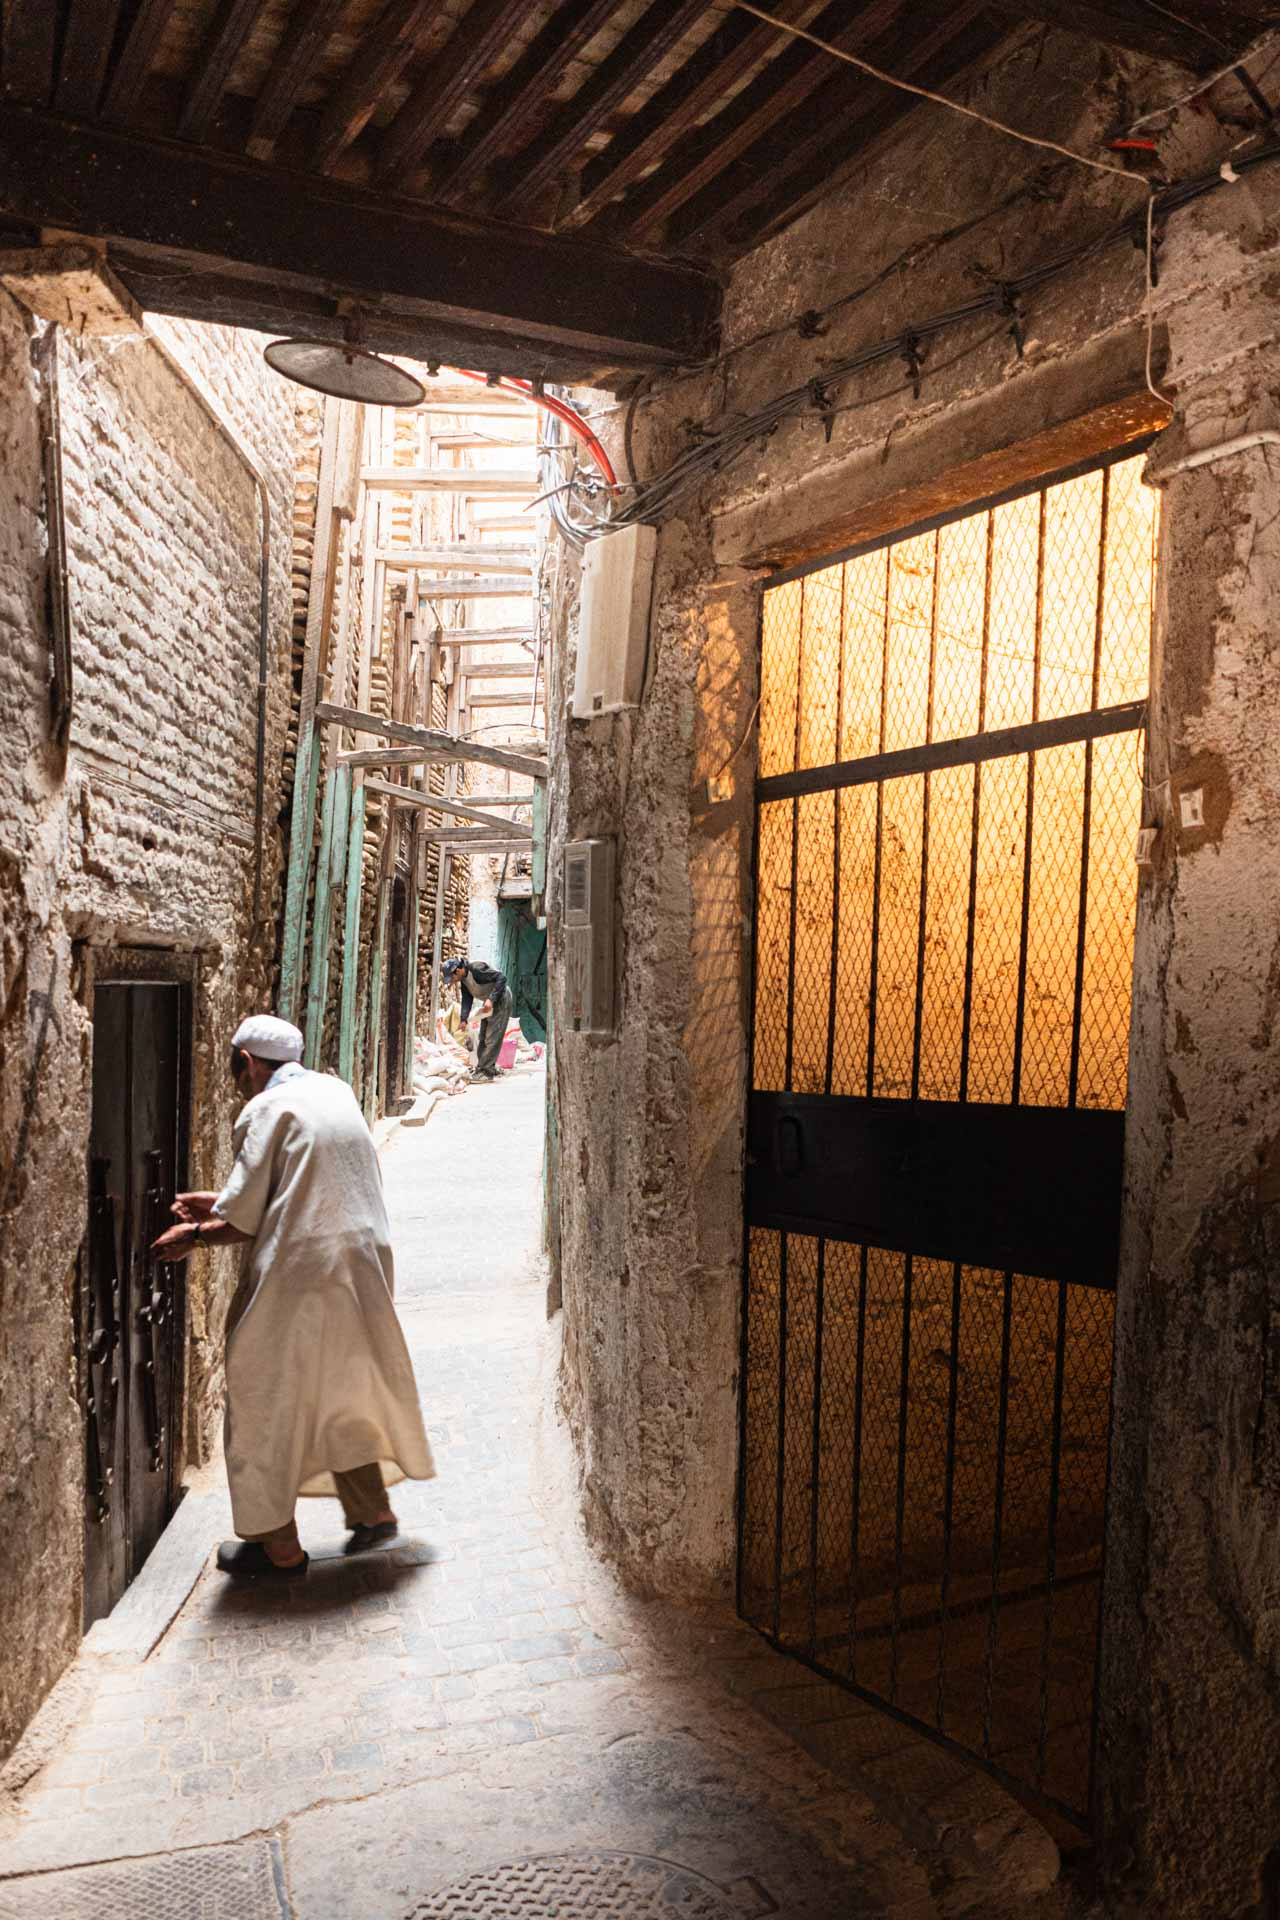 Alter Mann in Medina